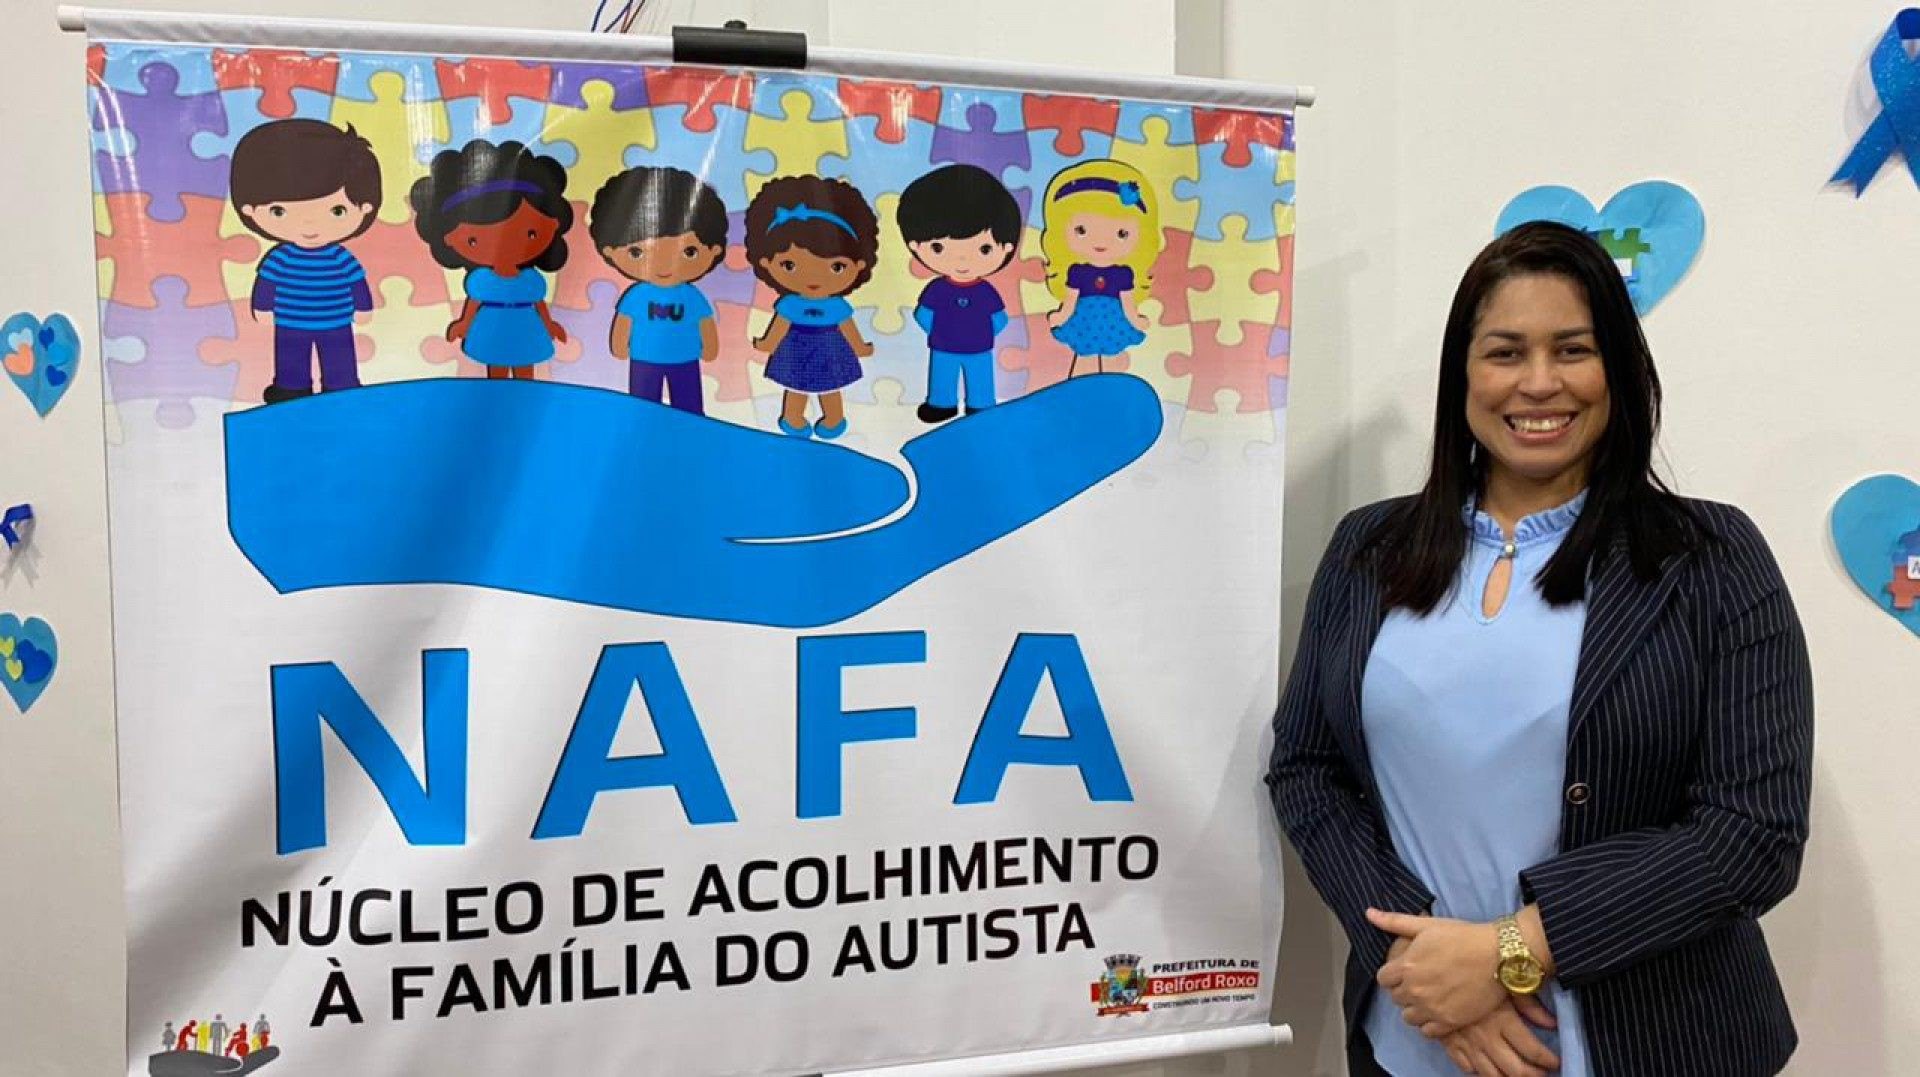 A presidente da Funbel, Clarice Santos, destacou a importância do Nafa  - Divulgação